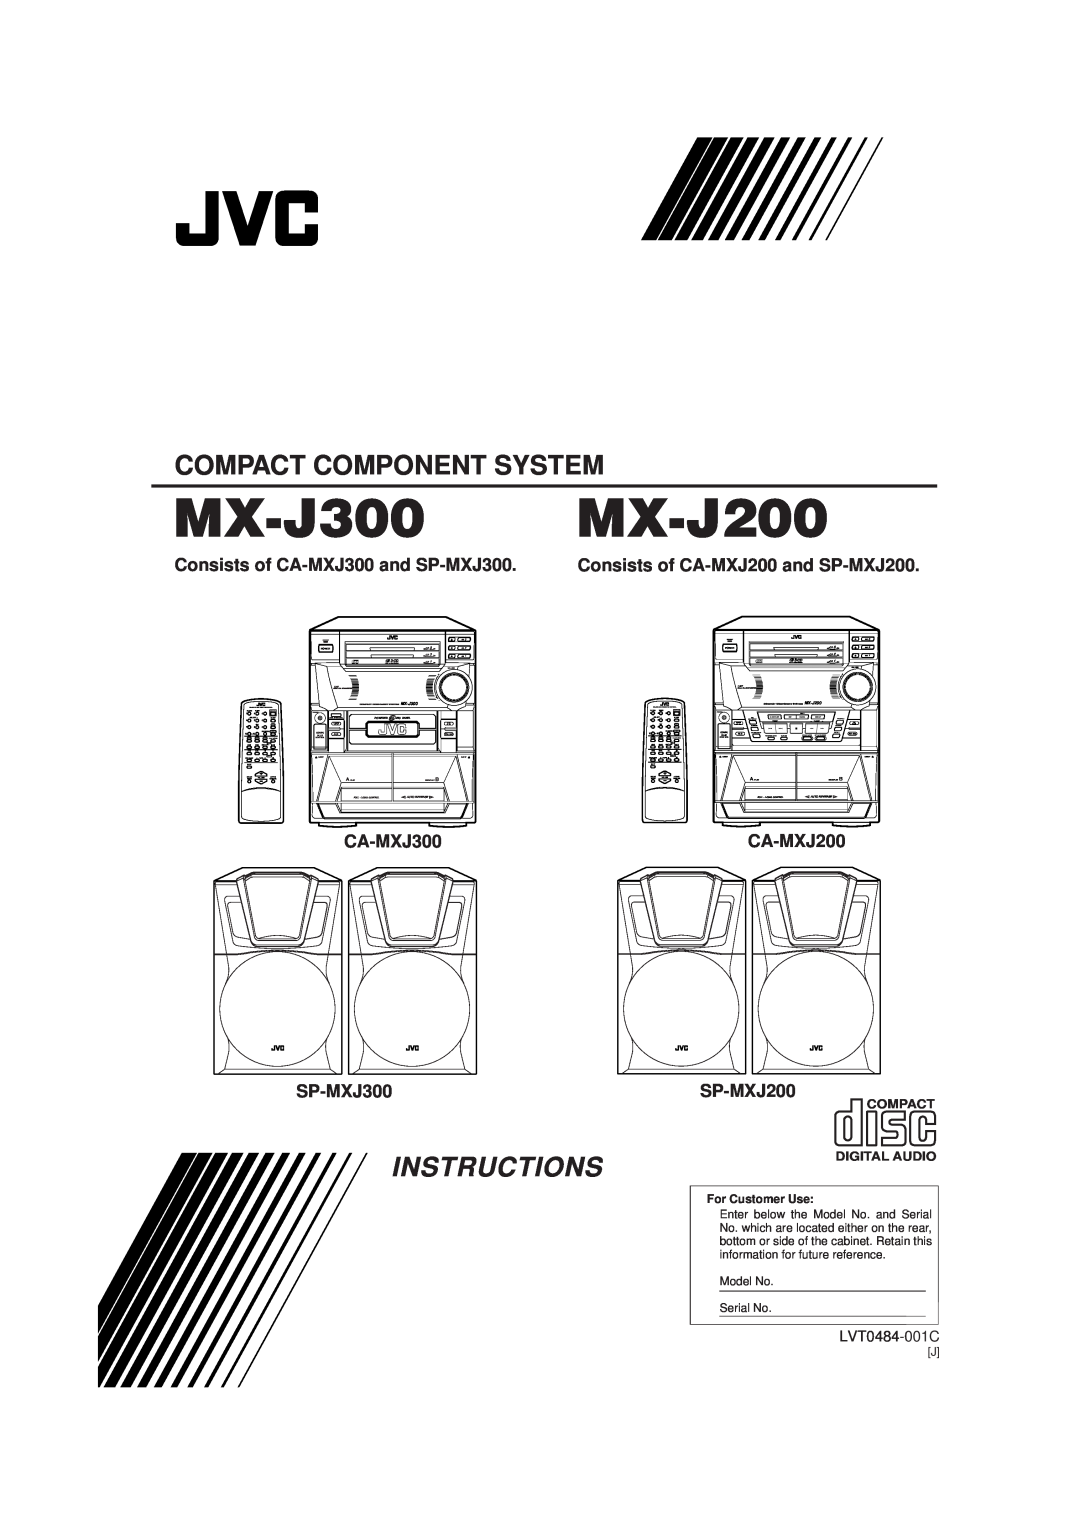 JVC MX-J300 manual Instructions, Consists of CA-MXJ300and SP-MXJ300, Consists of CA-MXJ200and SP-MXJ200, LVT0484-001C 